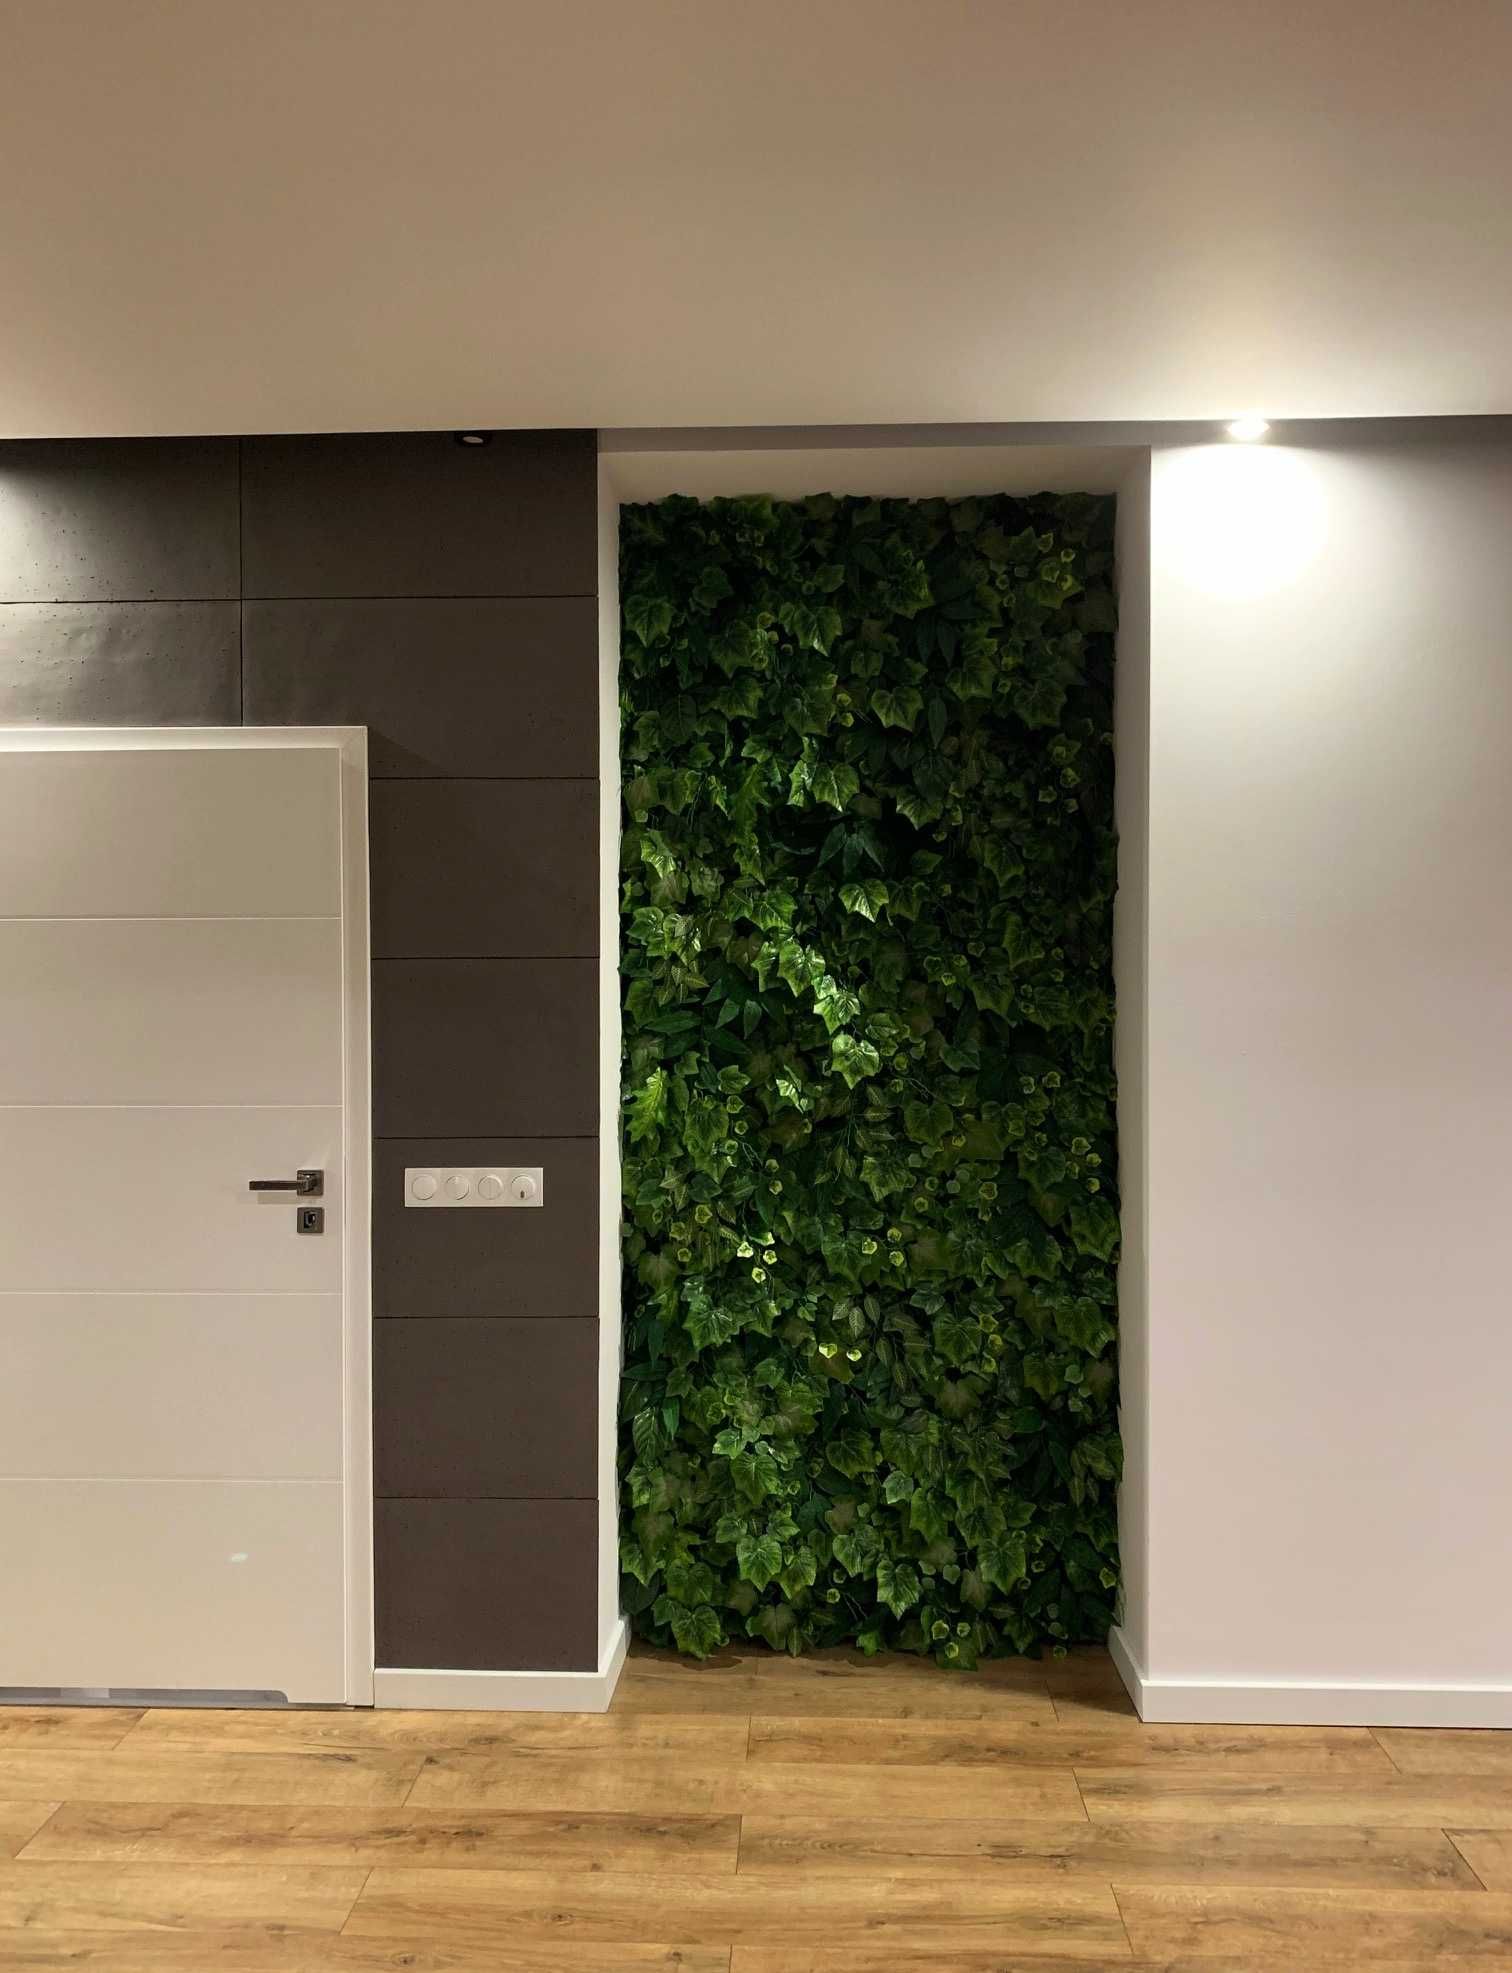 Zielone ściany ze sztucznych roślin, mchu oraz roślin stabilizowanych